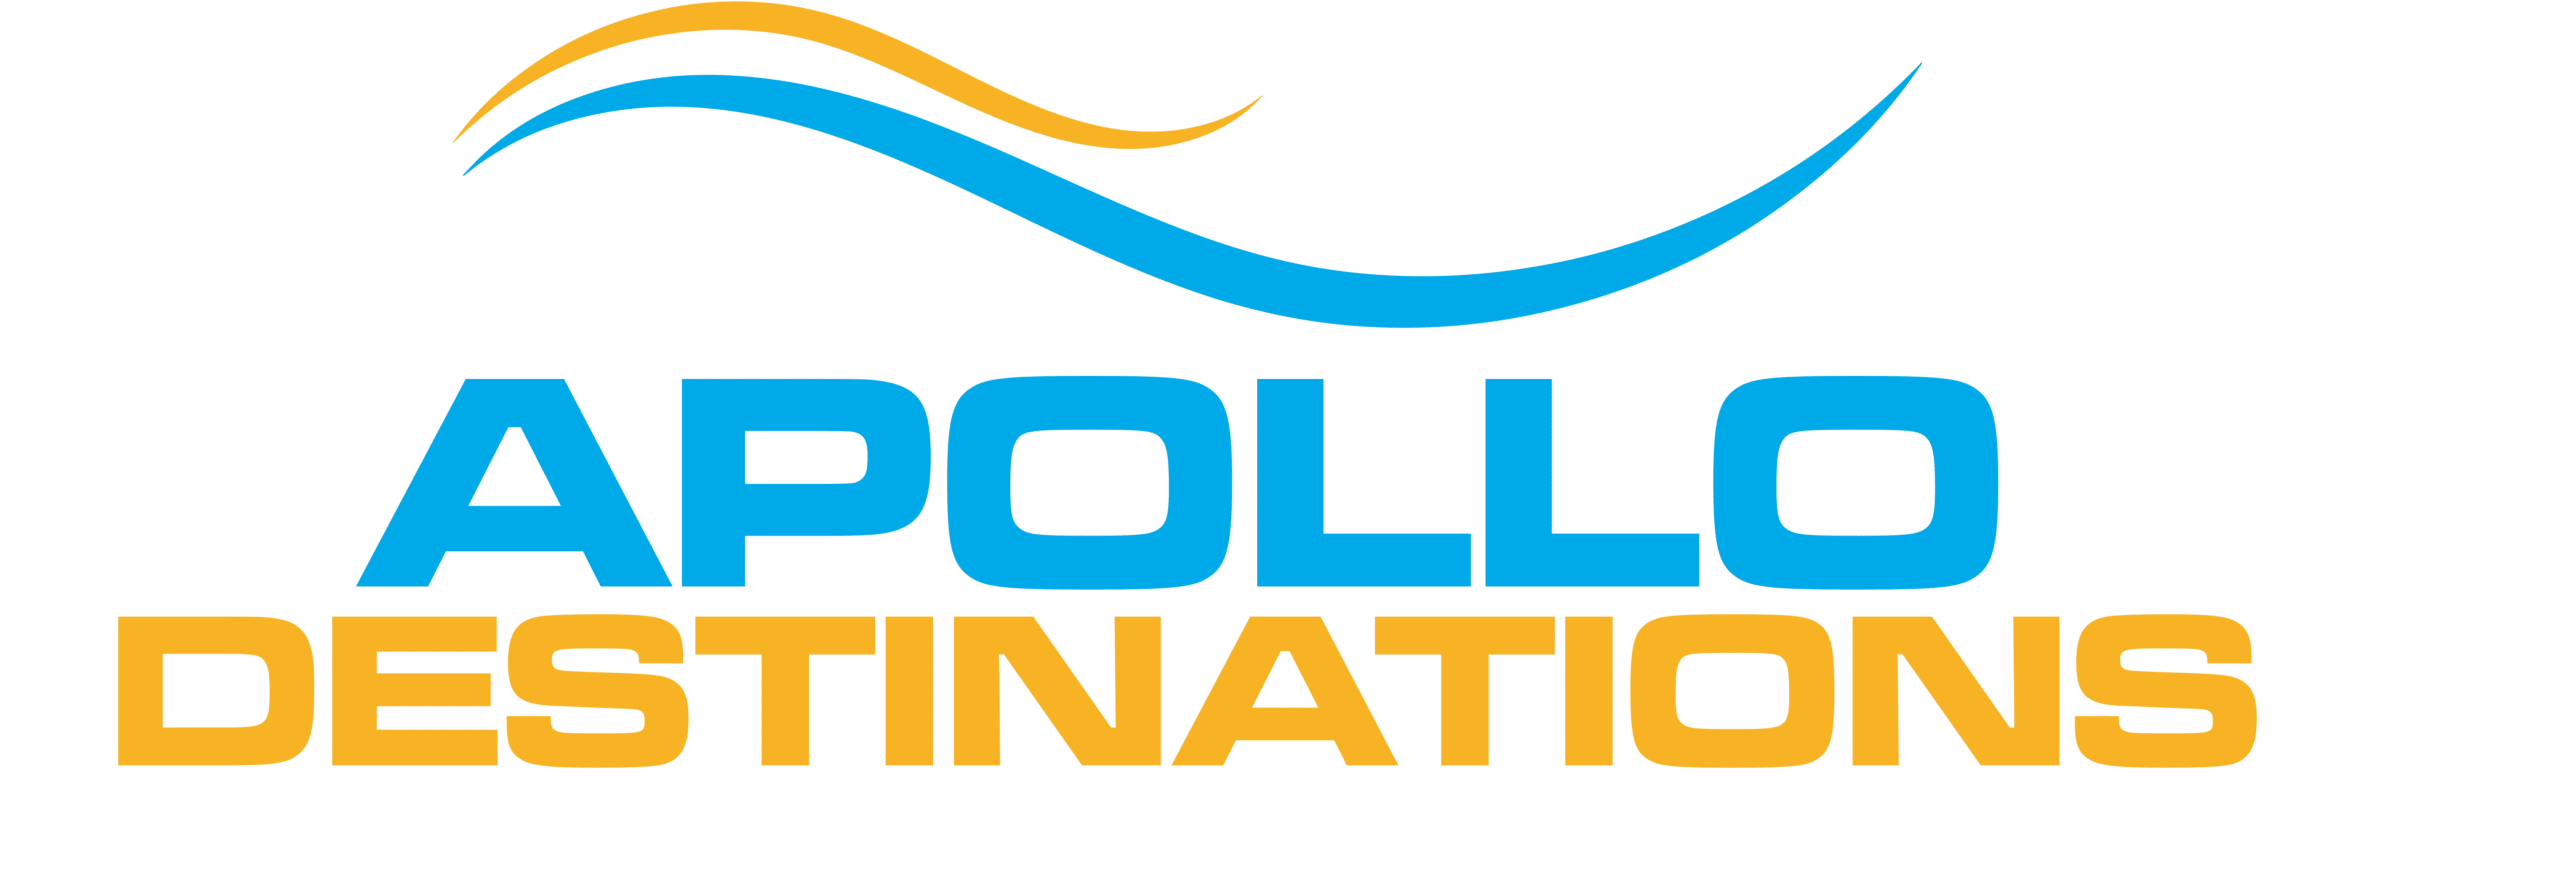 Apollo destinations logo